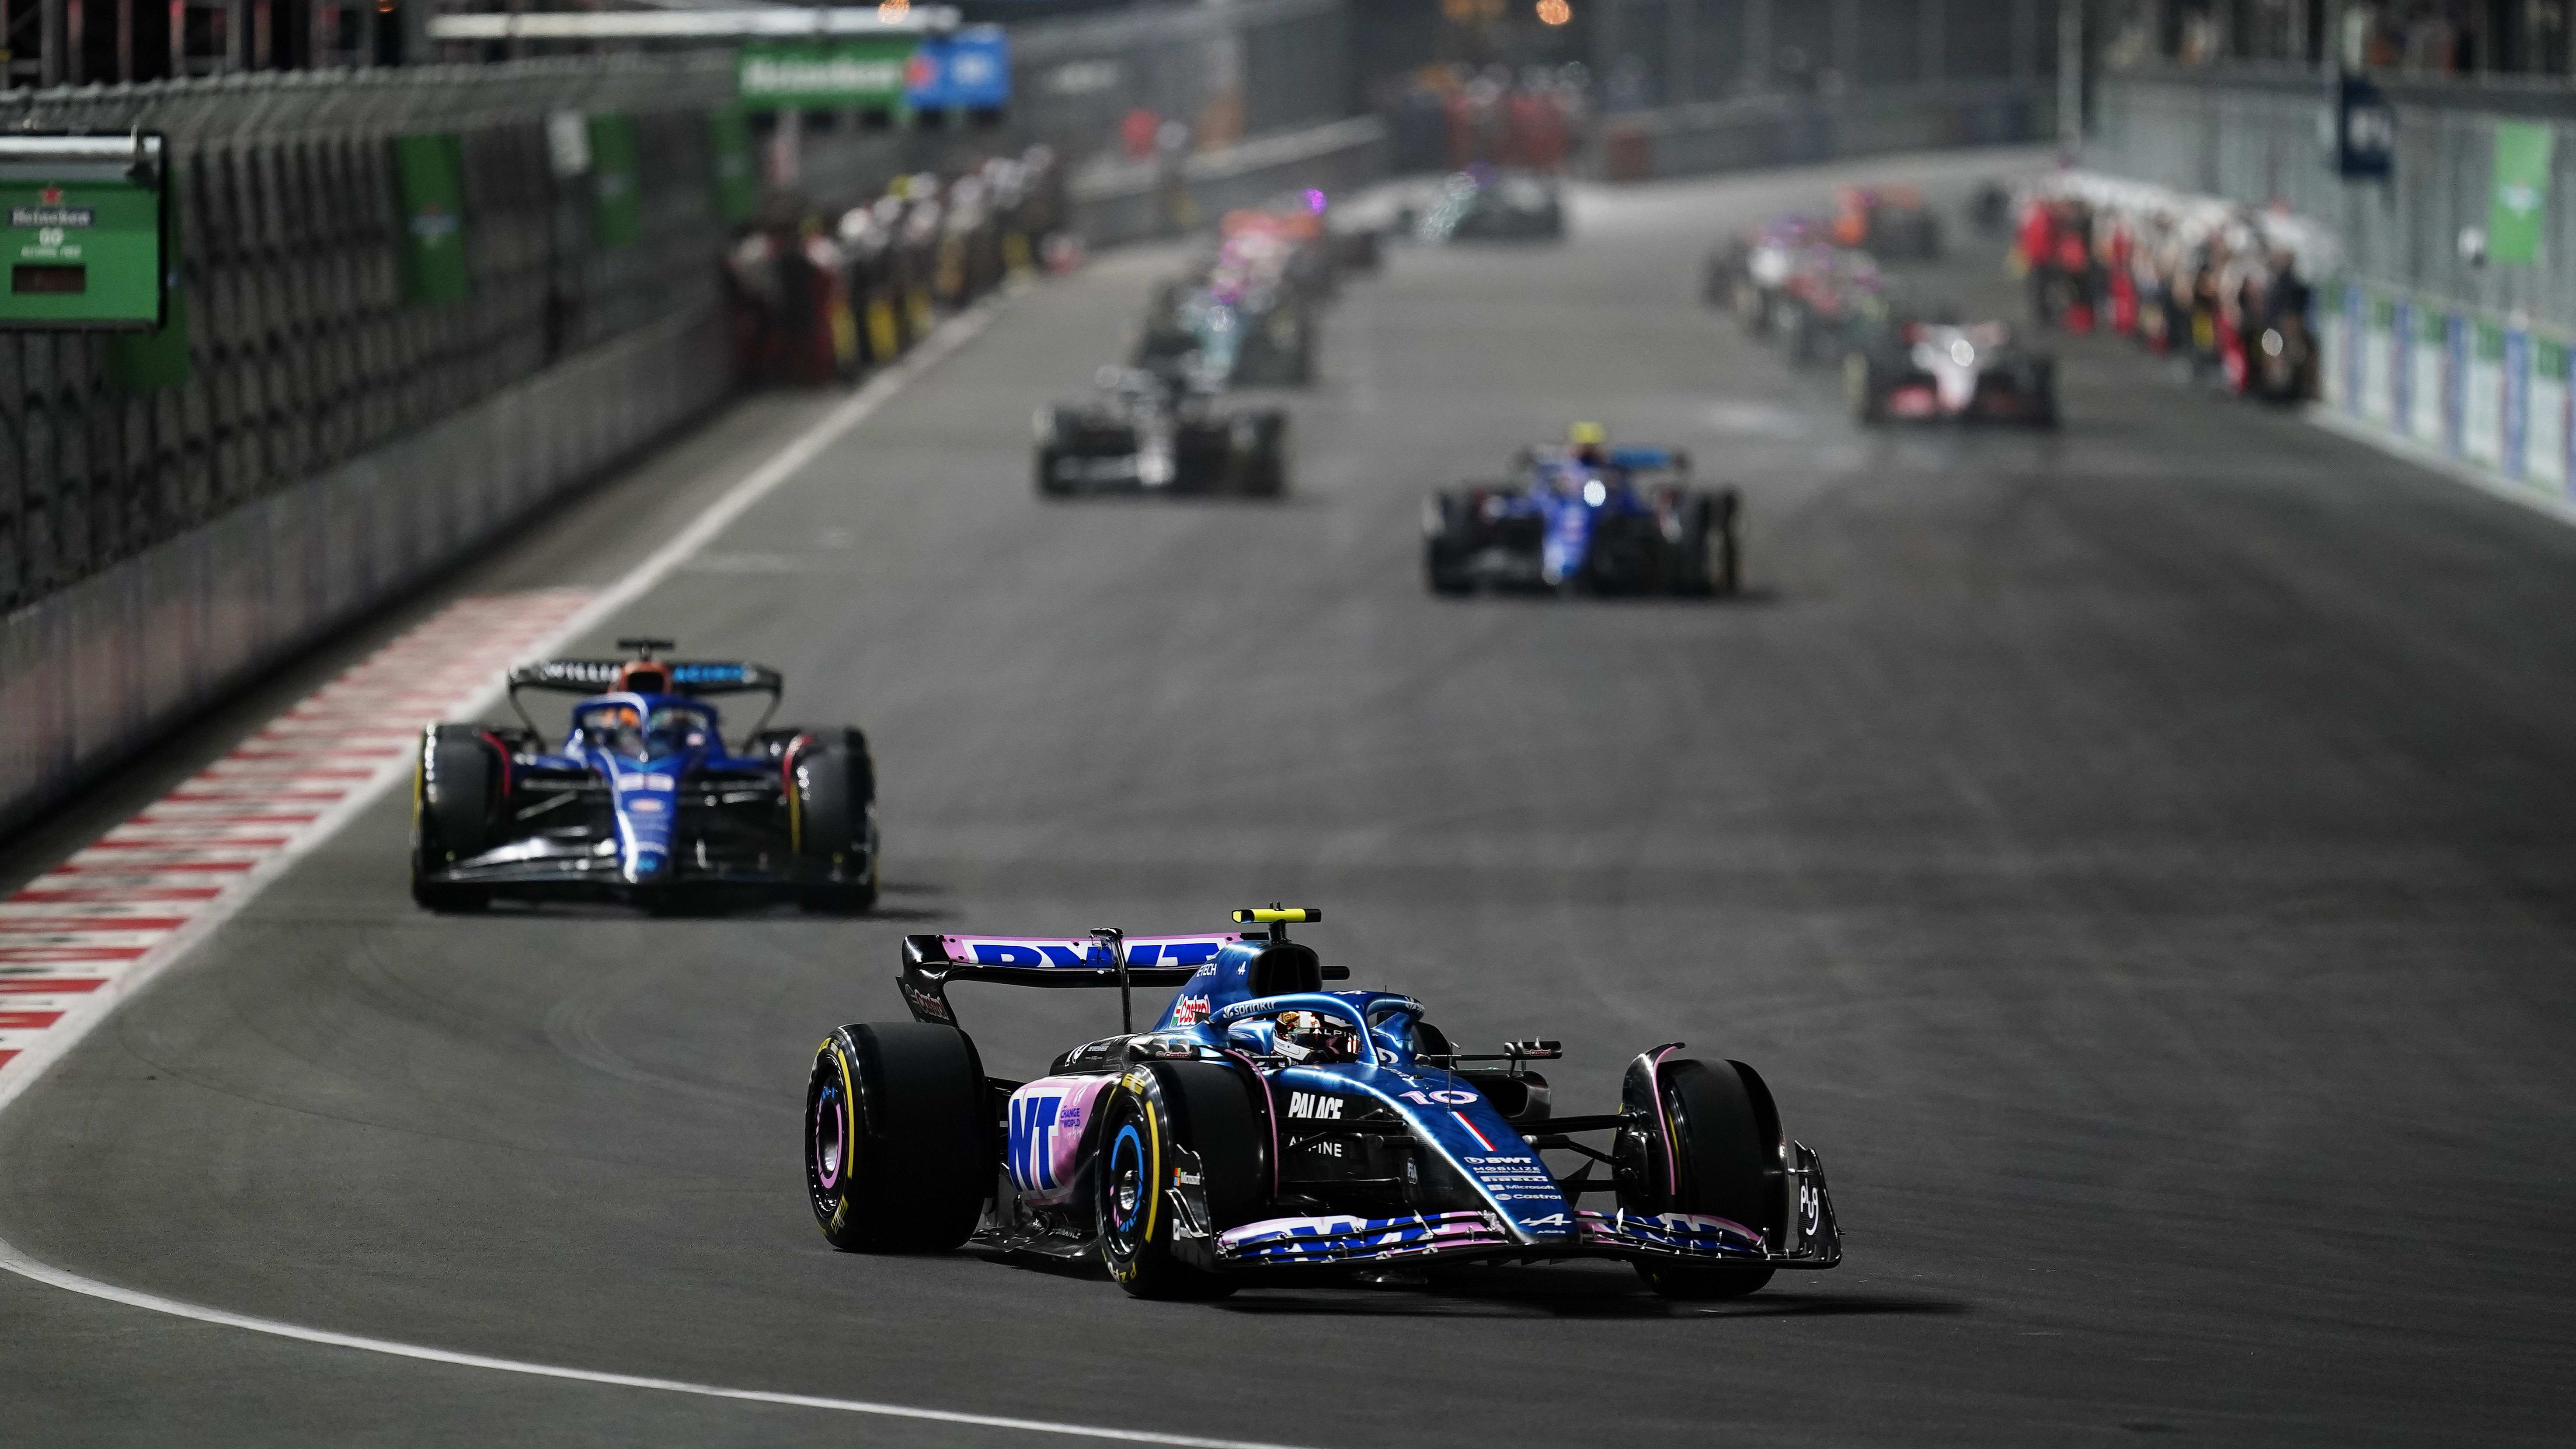 F1 News: Les équipes sont prêtes à tenter de modifier les règles, ce qui pourrait ruiner les espoirs d’Andretti